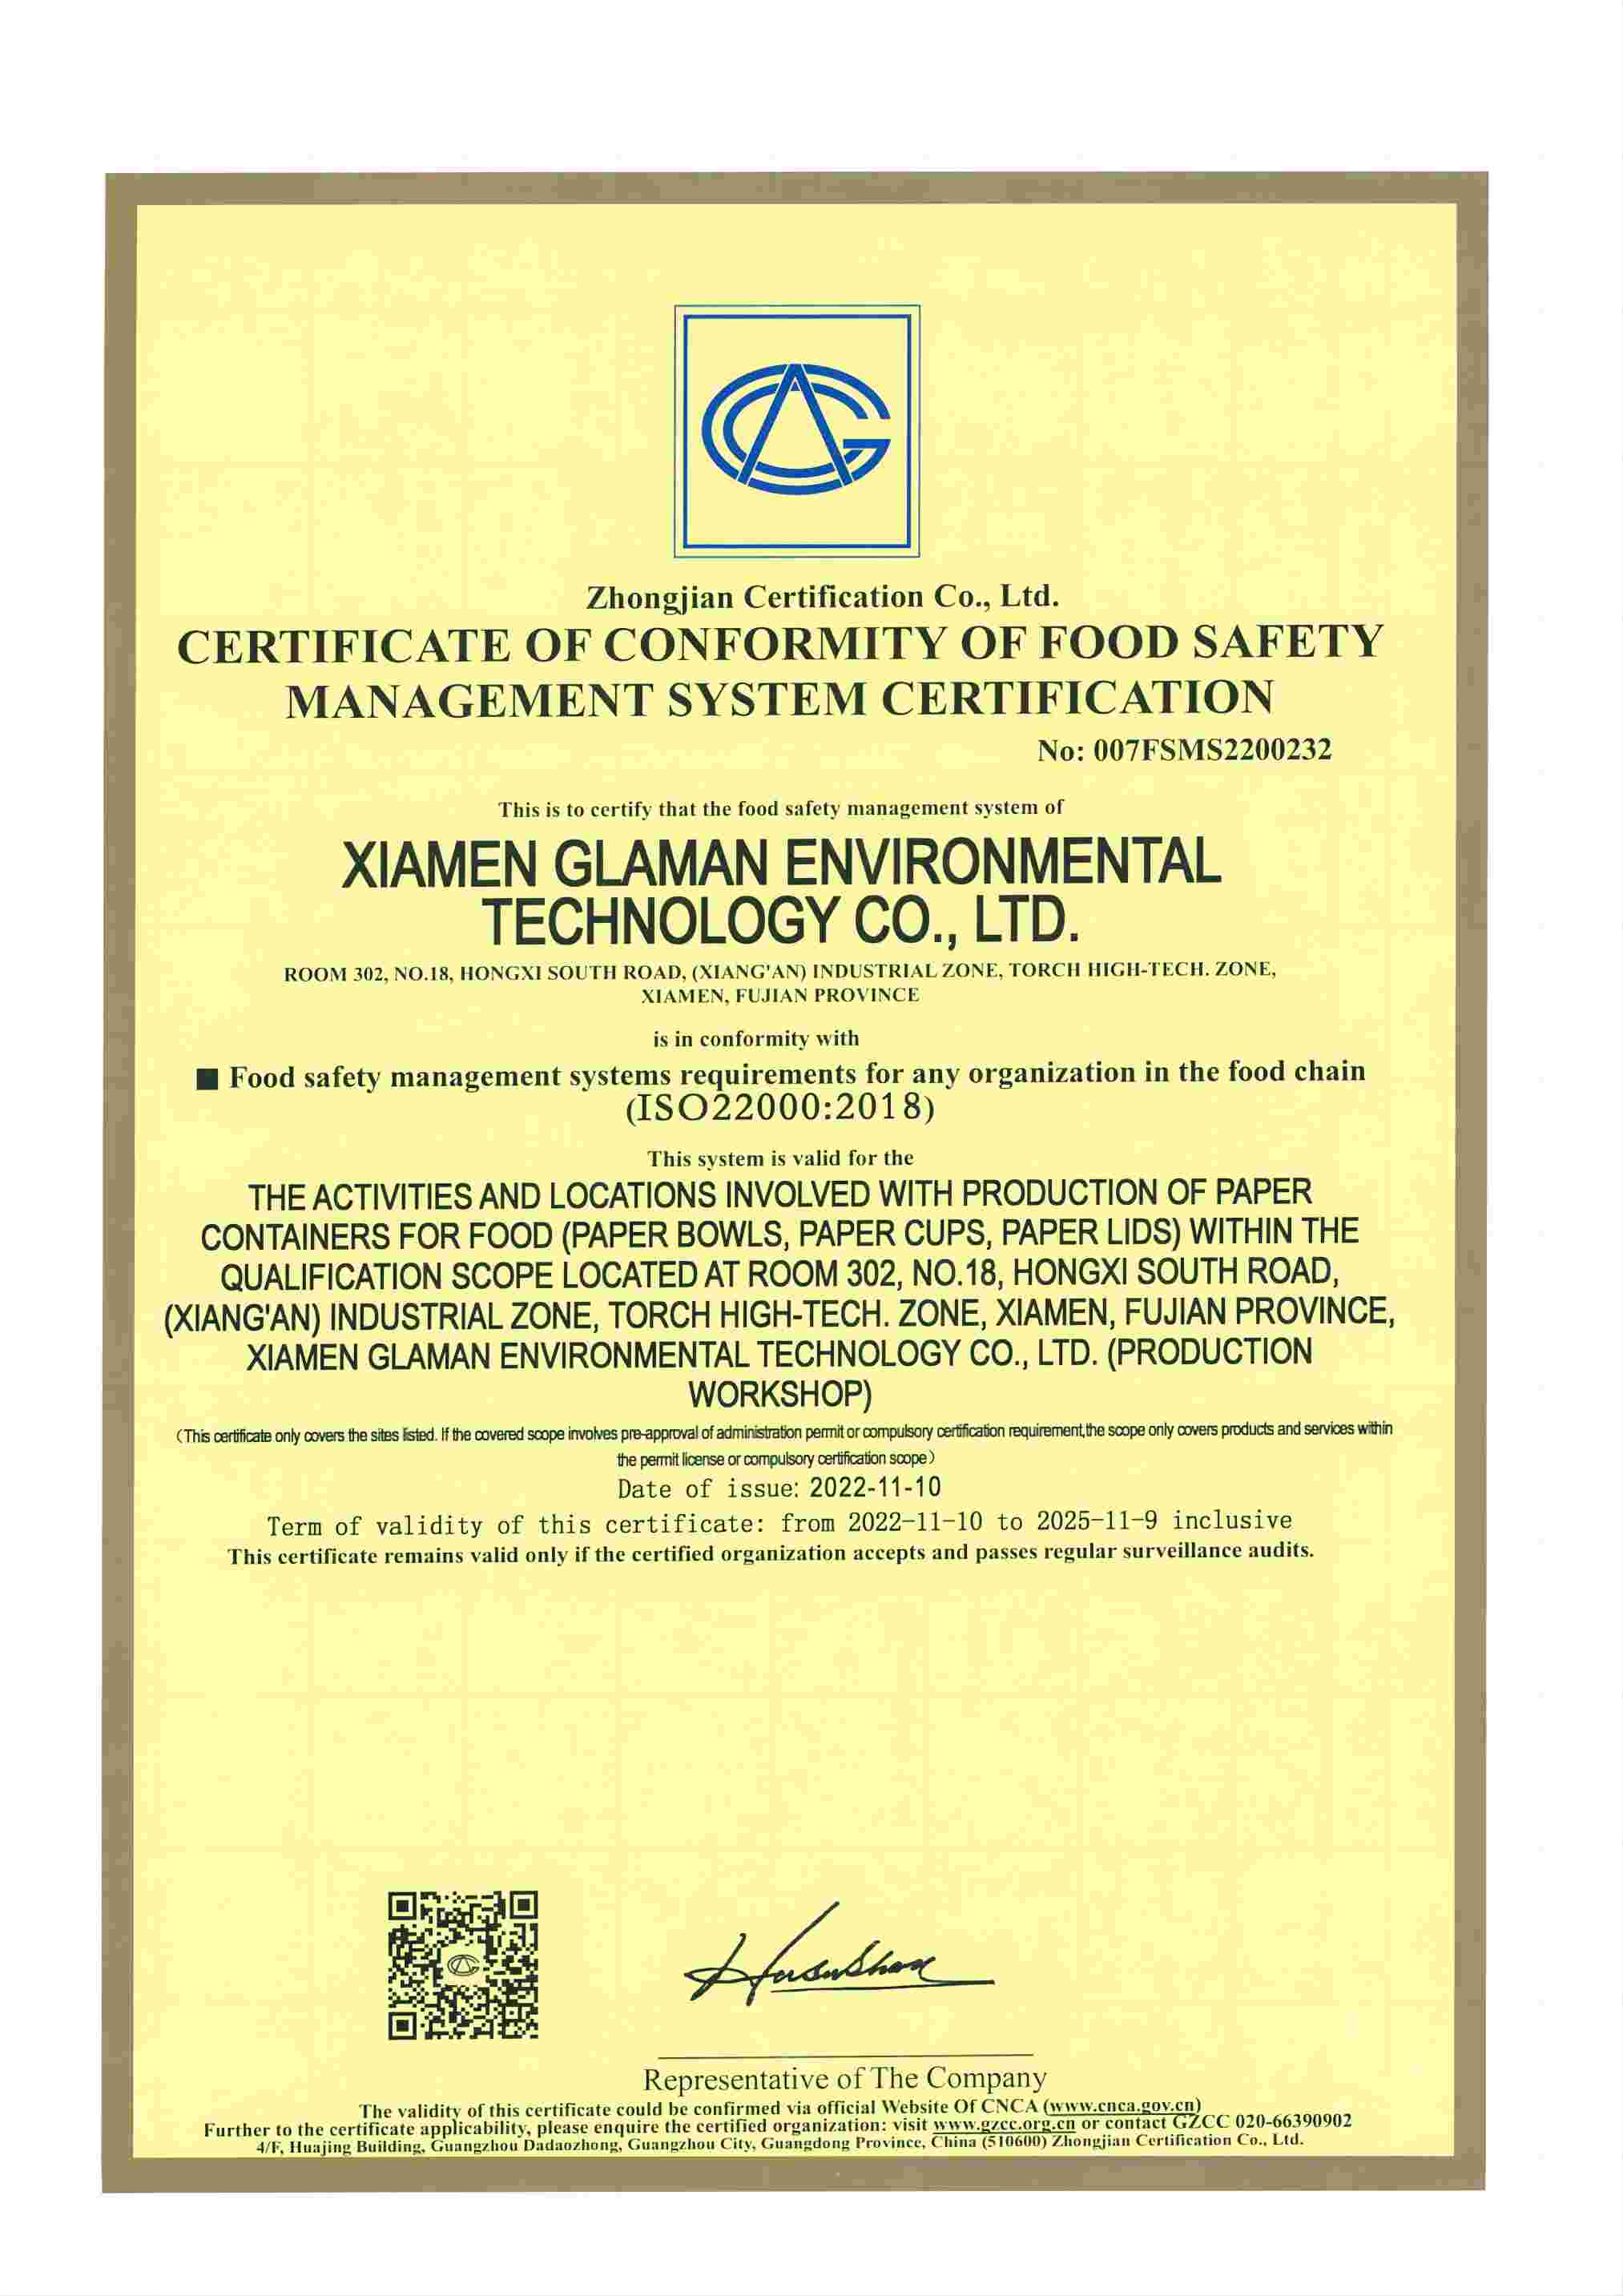 La certification ISO22000
        